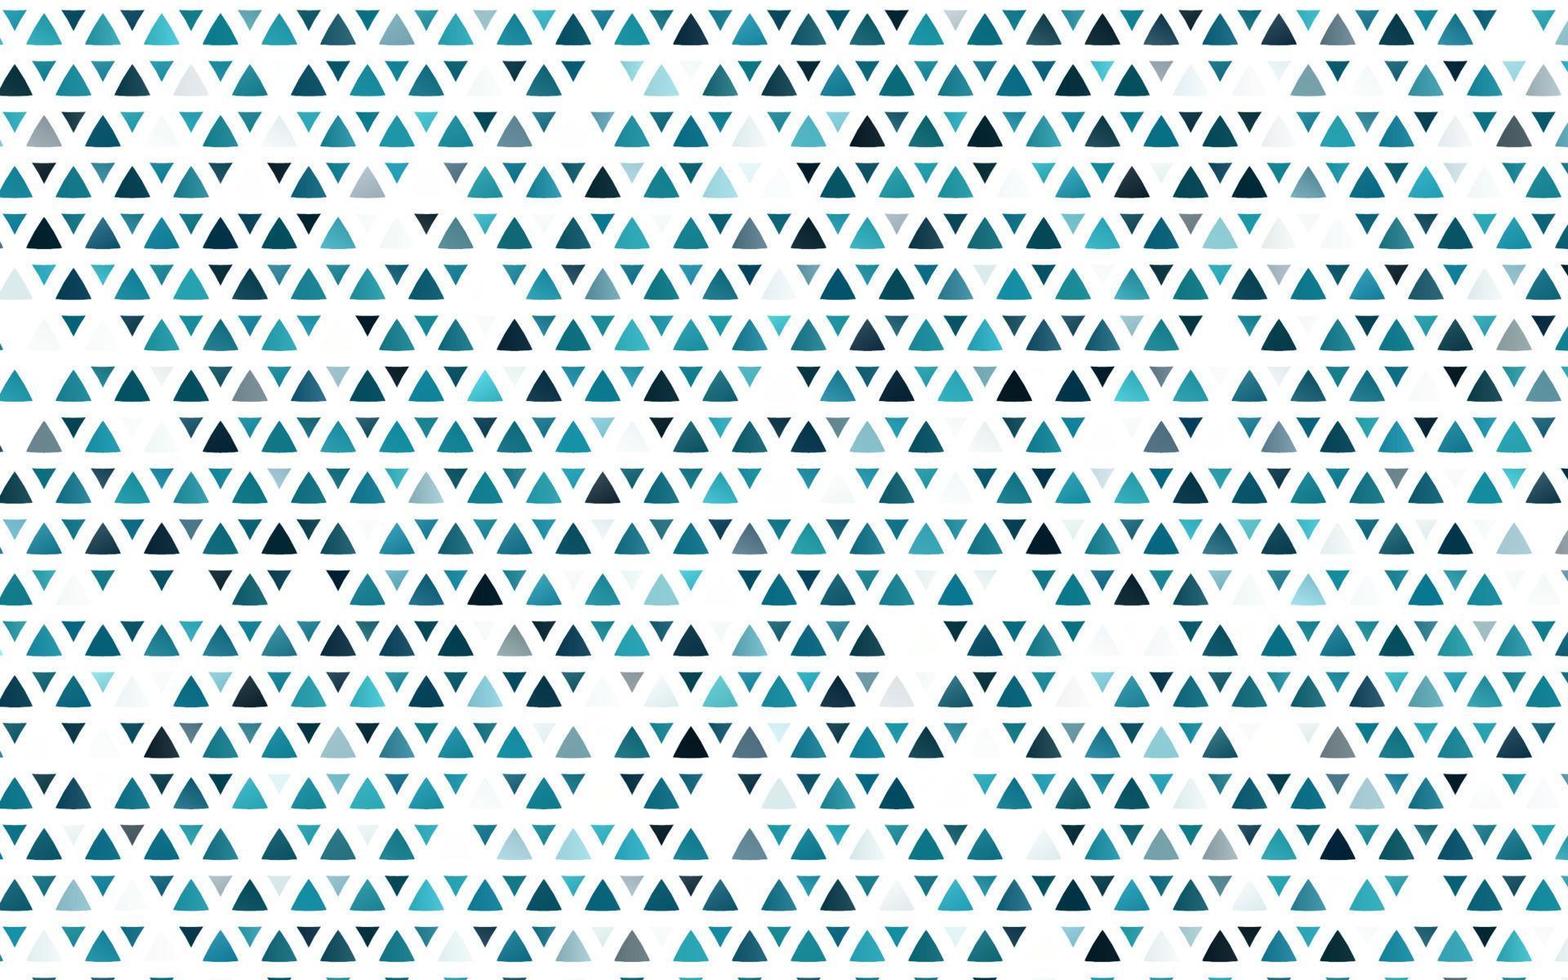 motif vectoriel bleu clair dans un style polygonal.